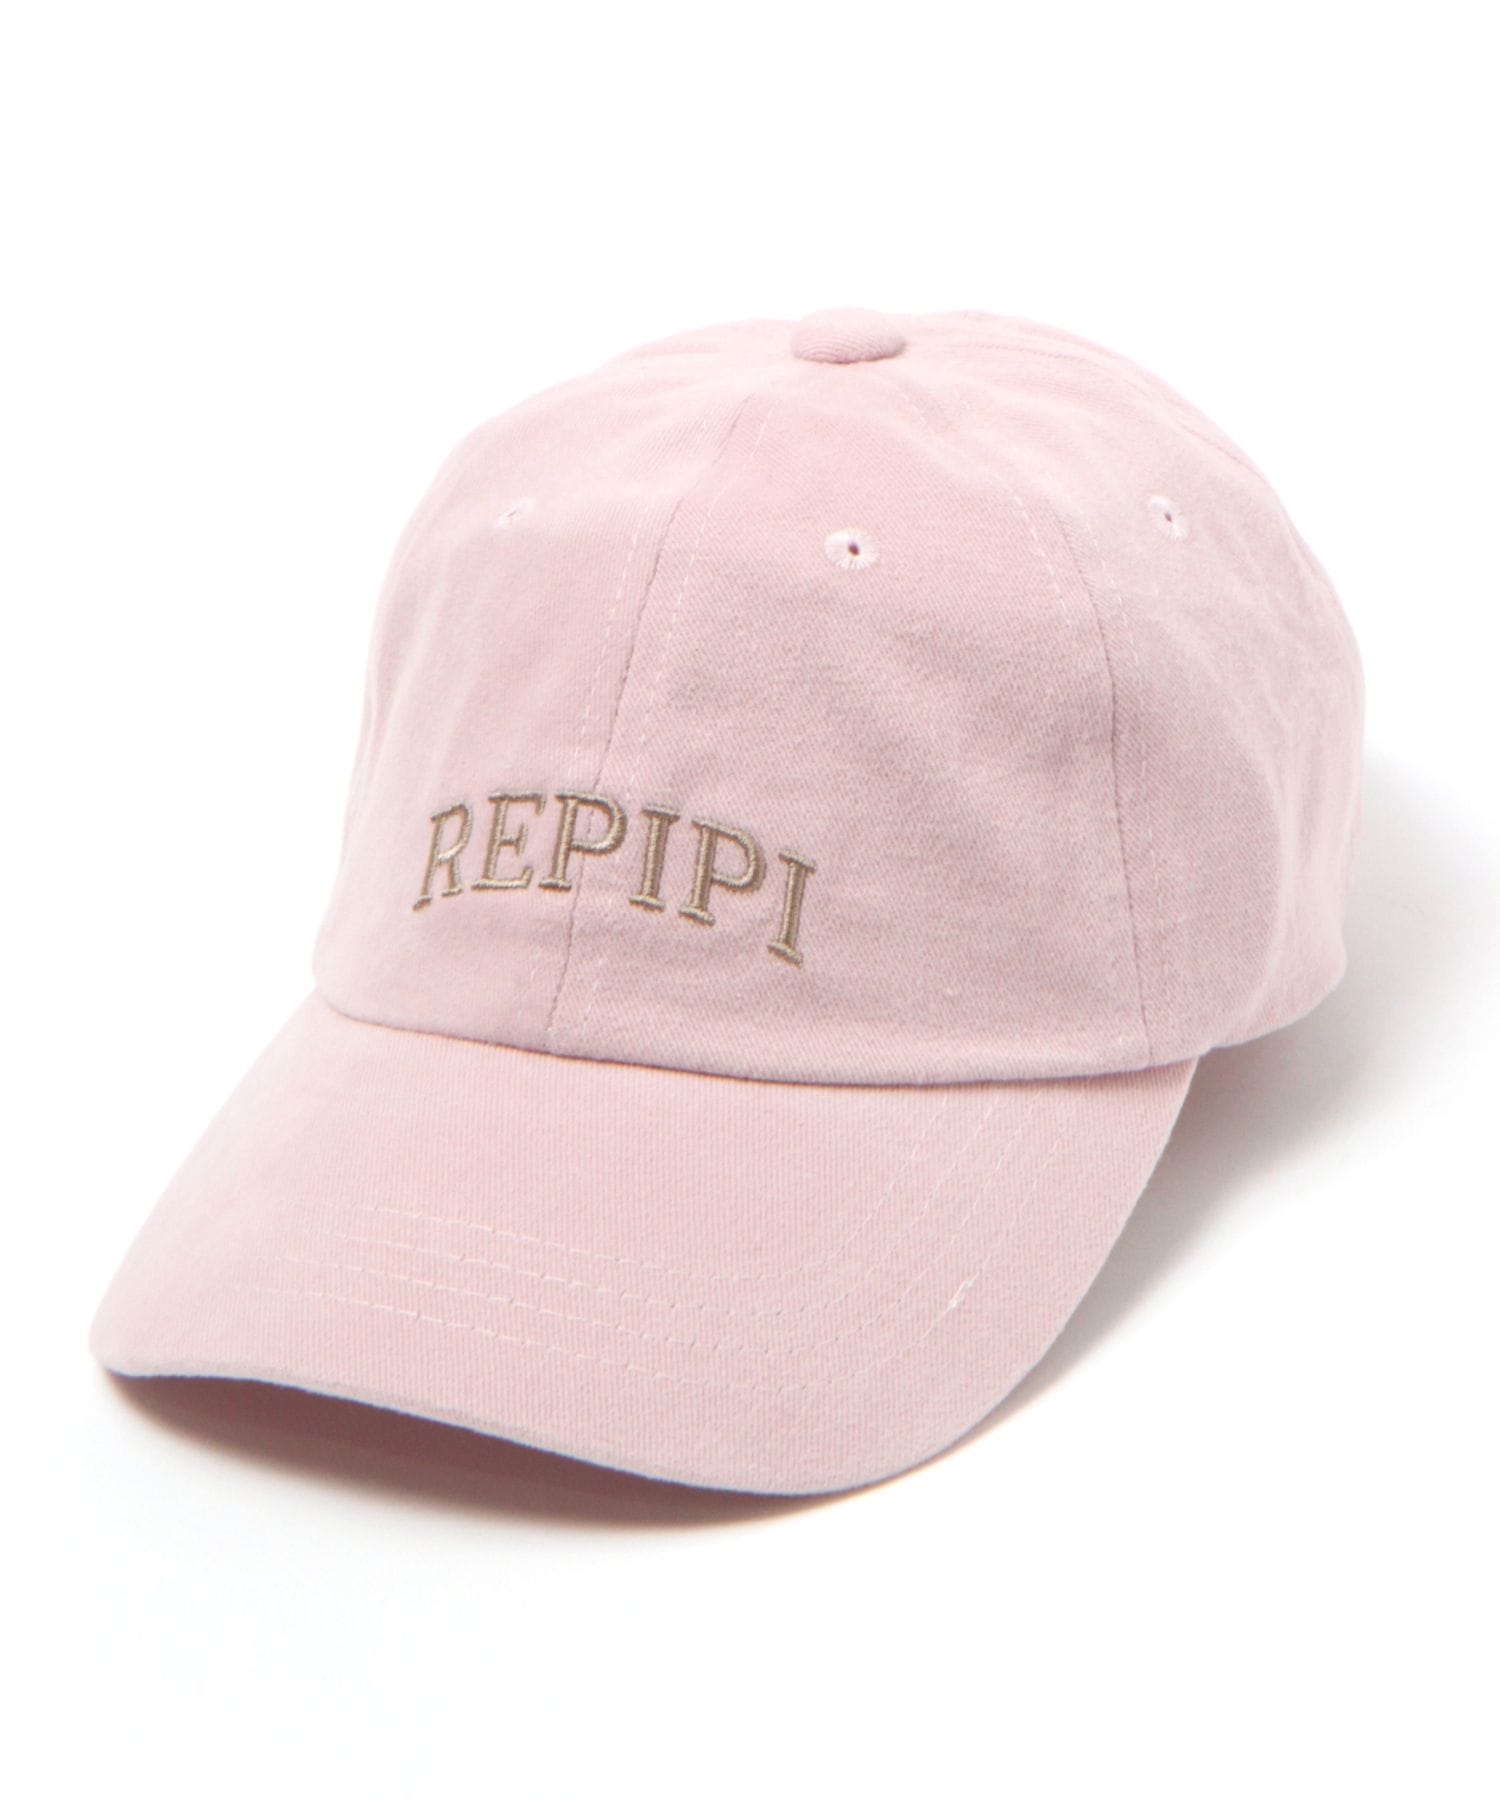 レピピアルマリオ キャップ - 帽子